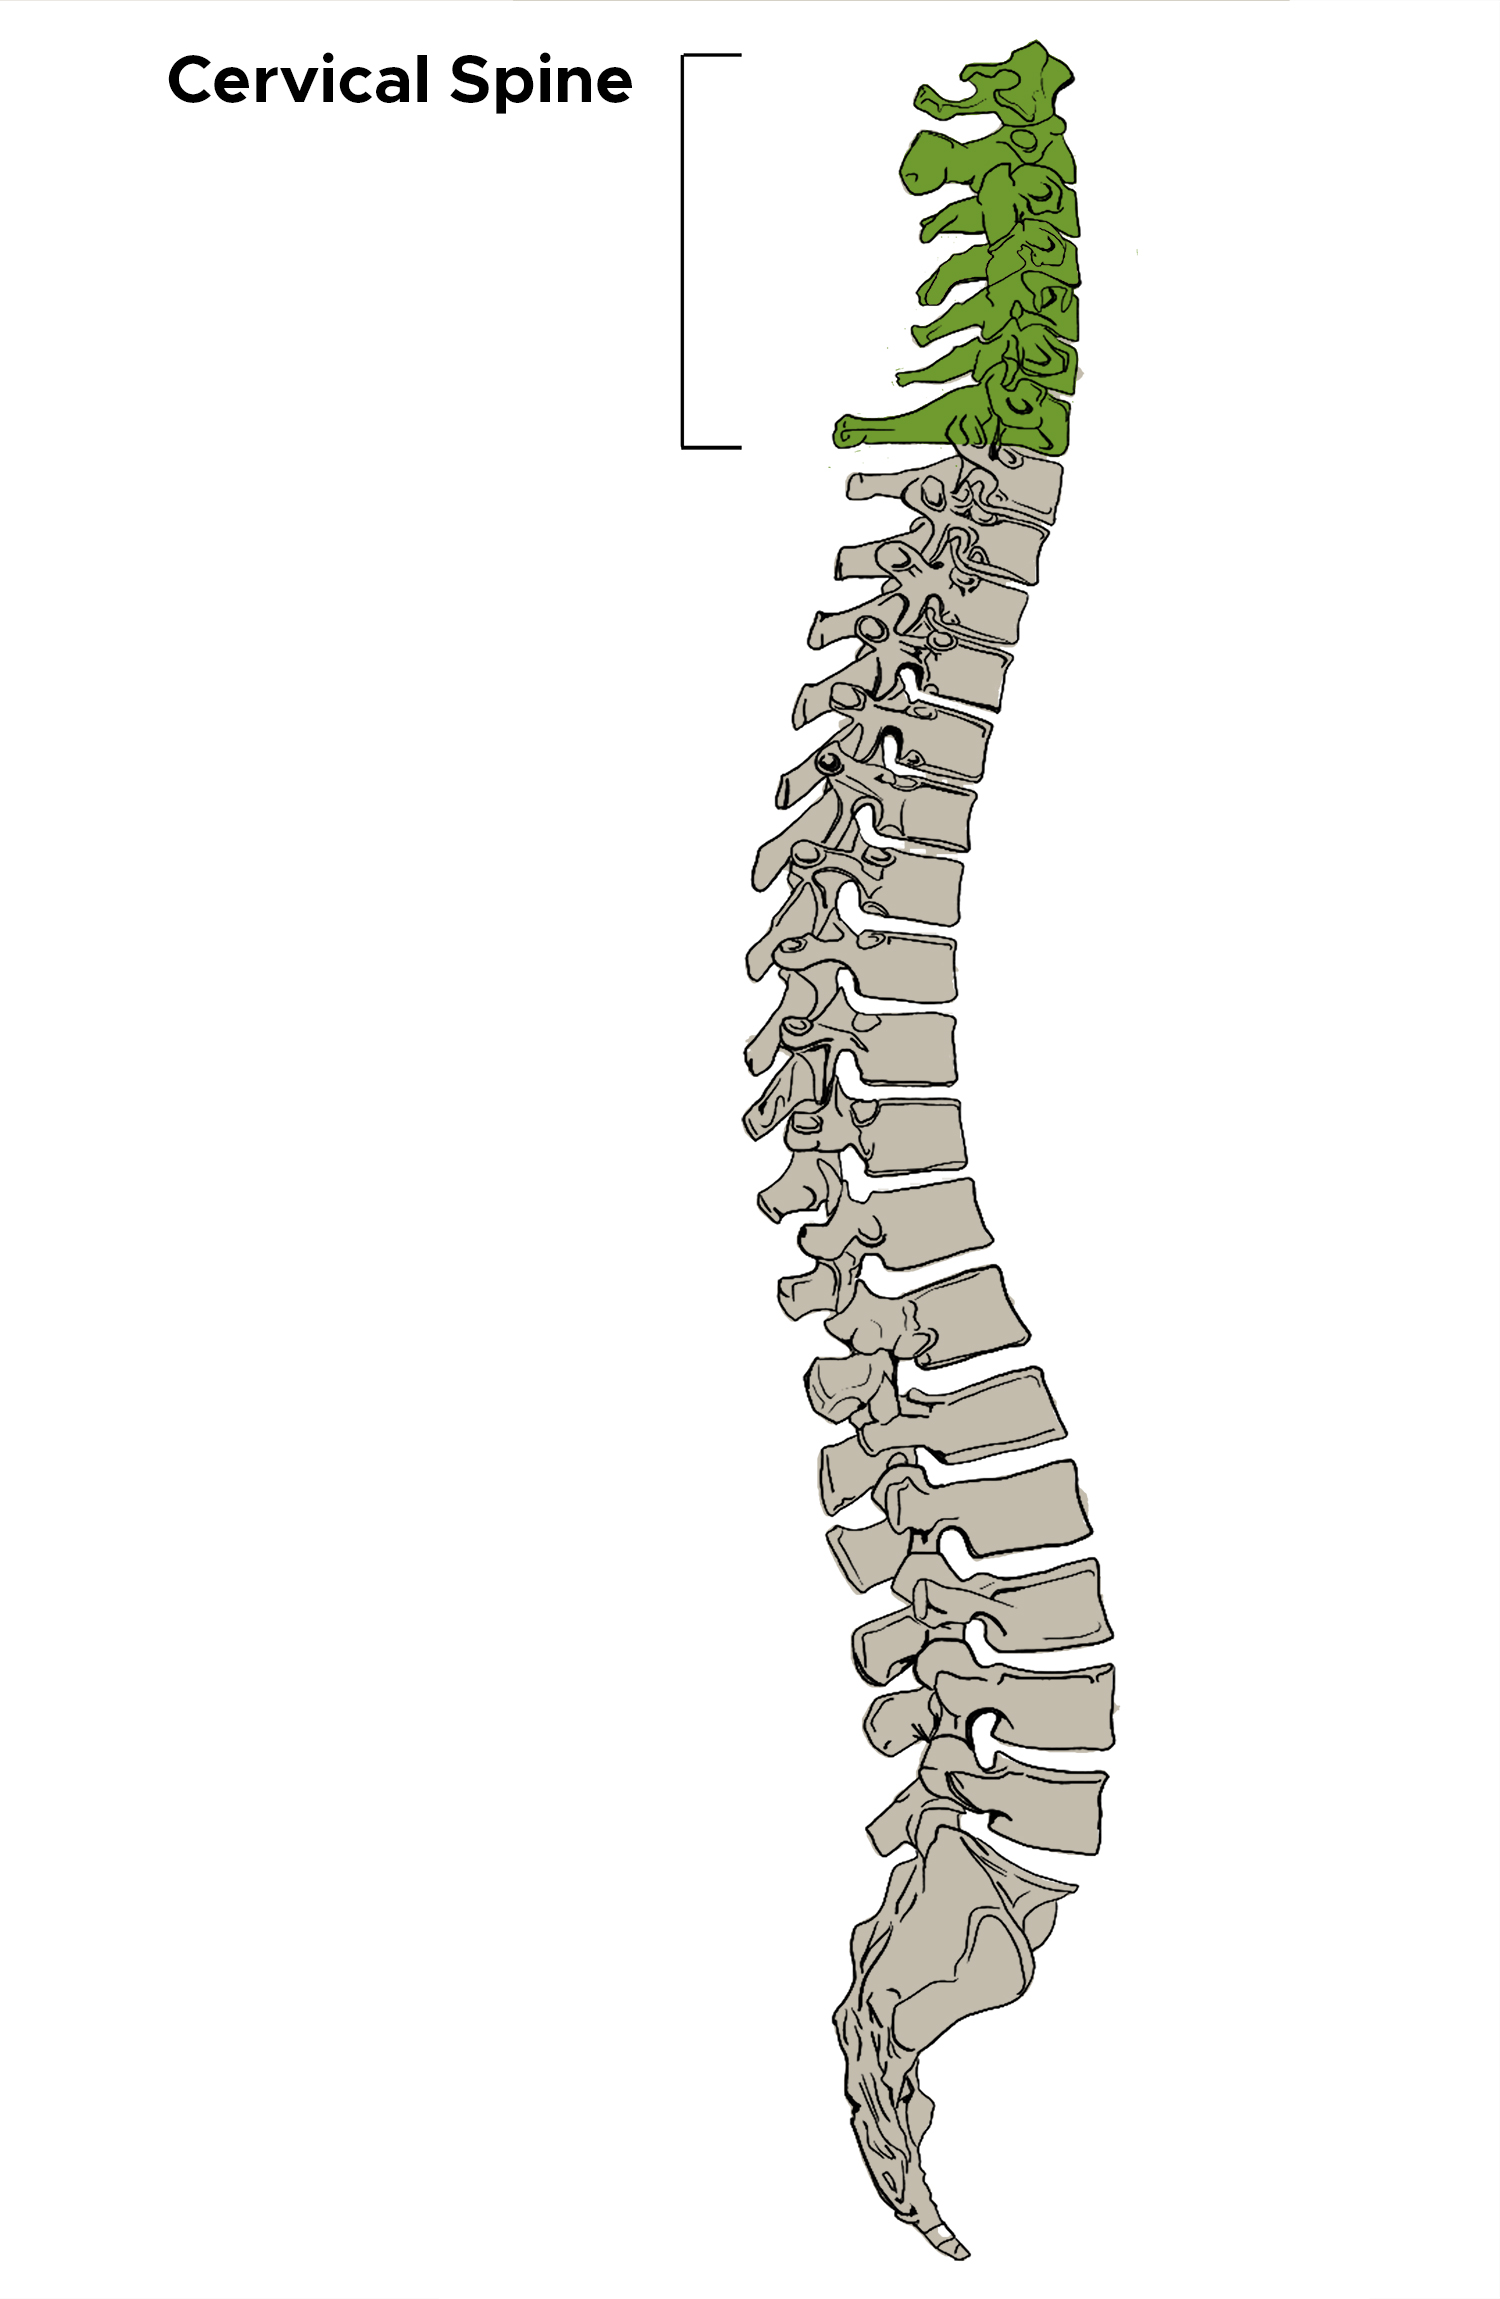 Cervical spine illustration